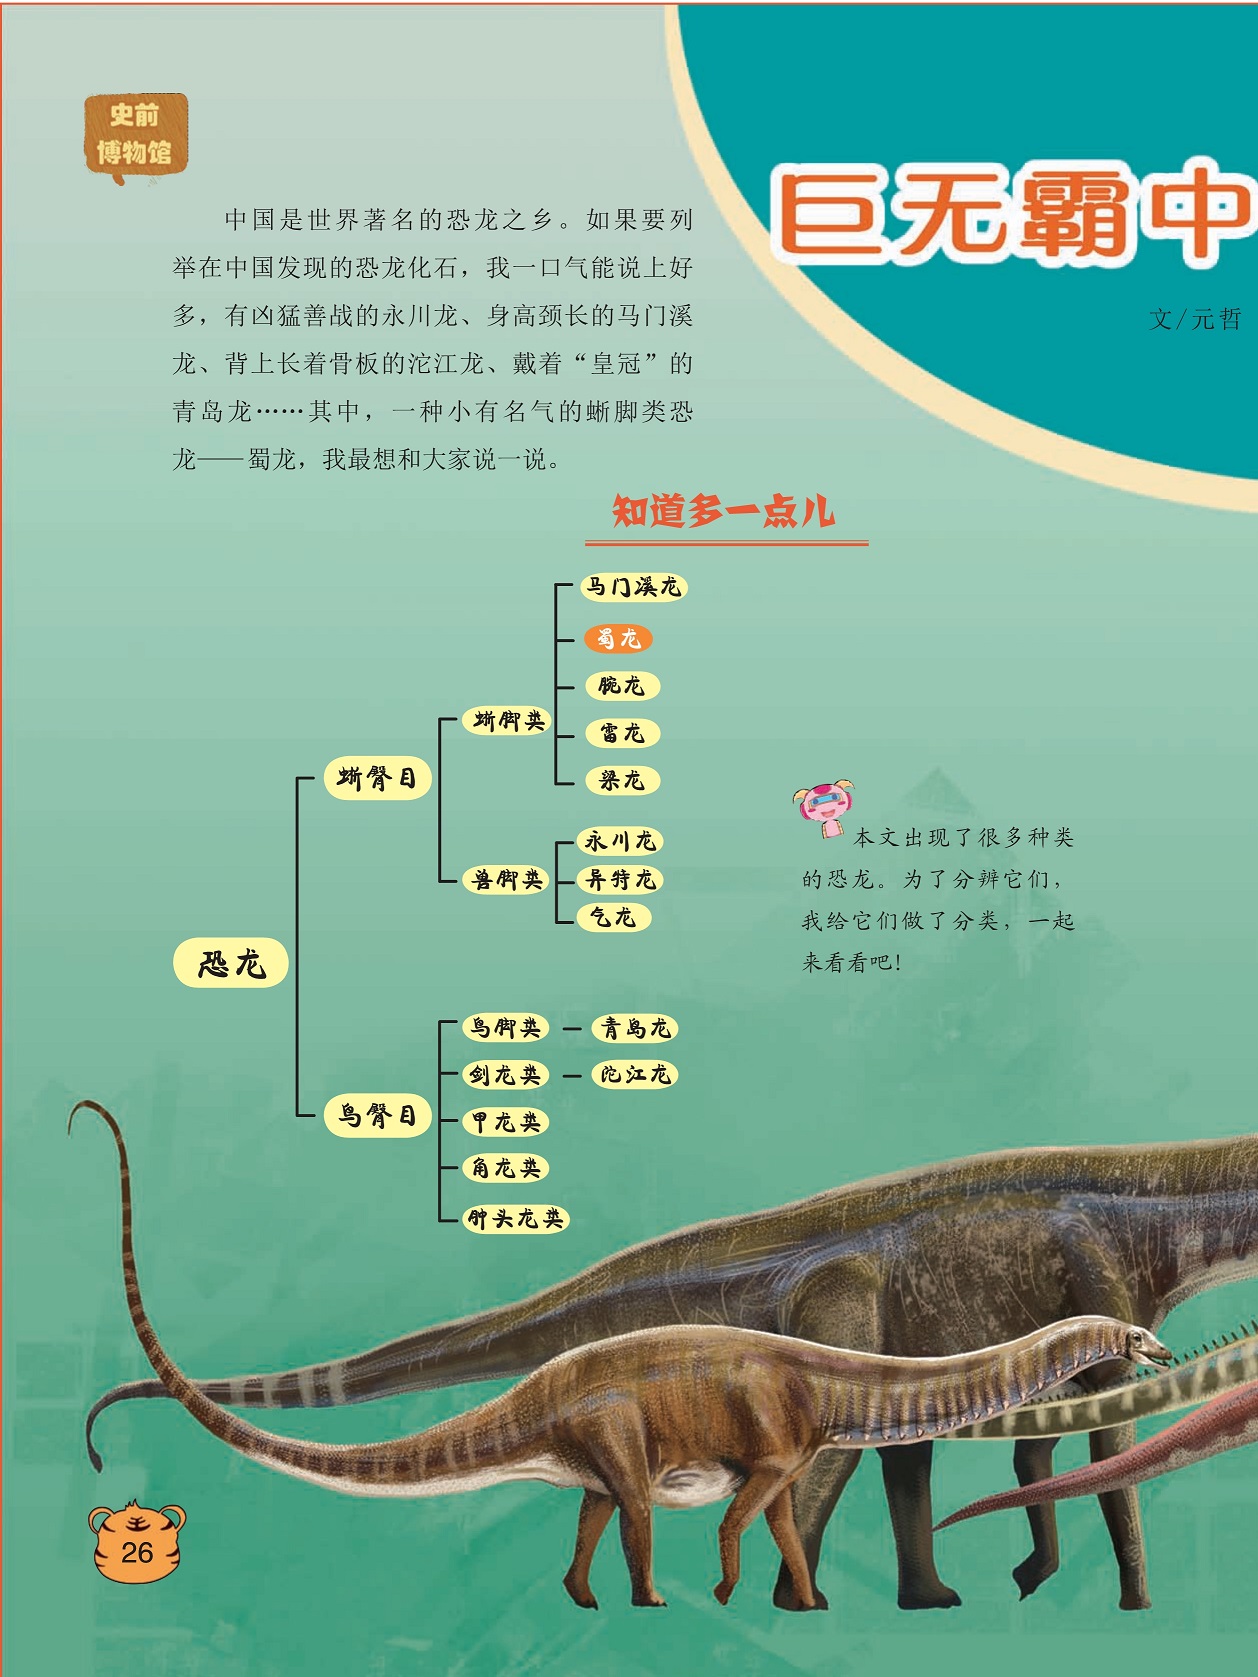 中国是世界著名的恐龙之乡,在中国发现的恐龙化石